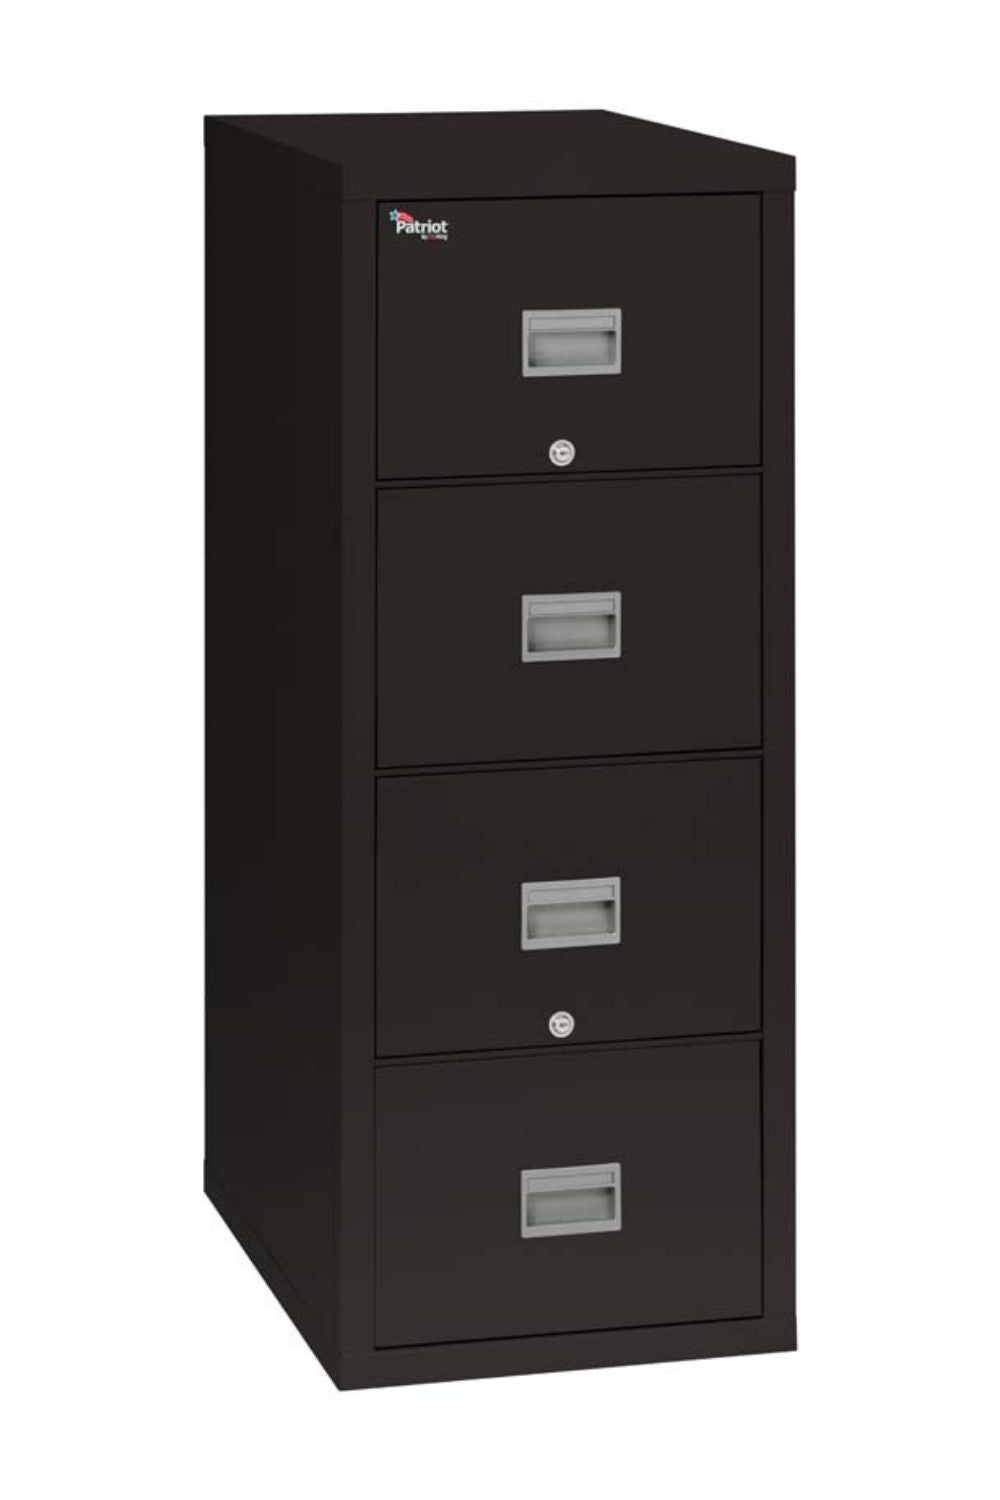 2-Drawer, 4-Drawer Metal File Cabinet (25-inch deep)